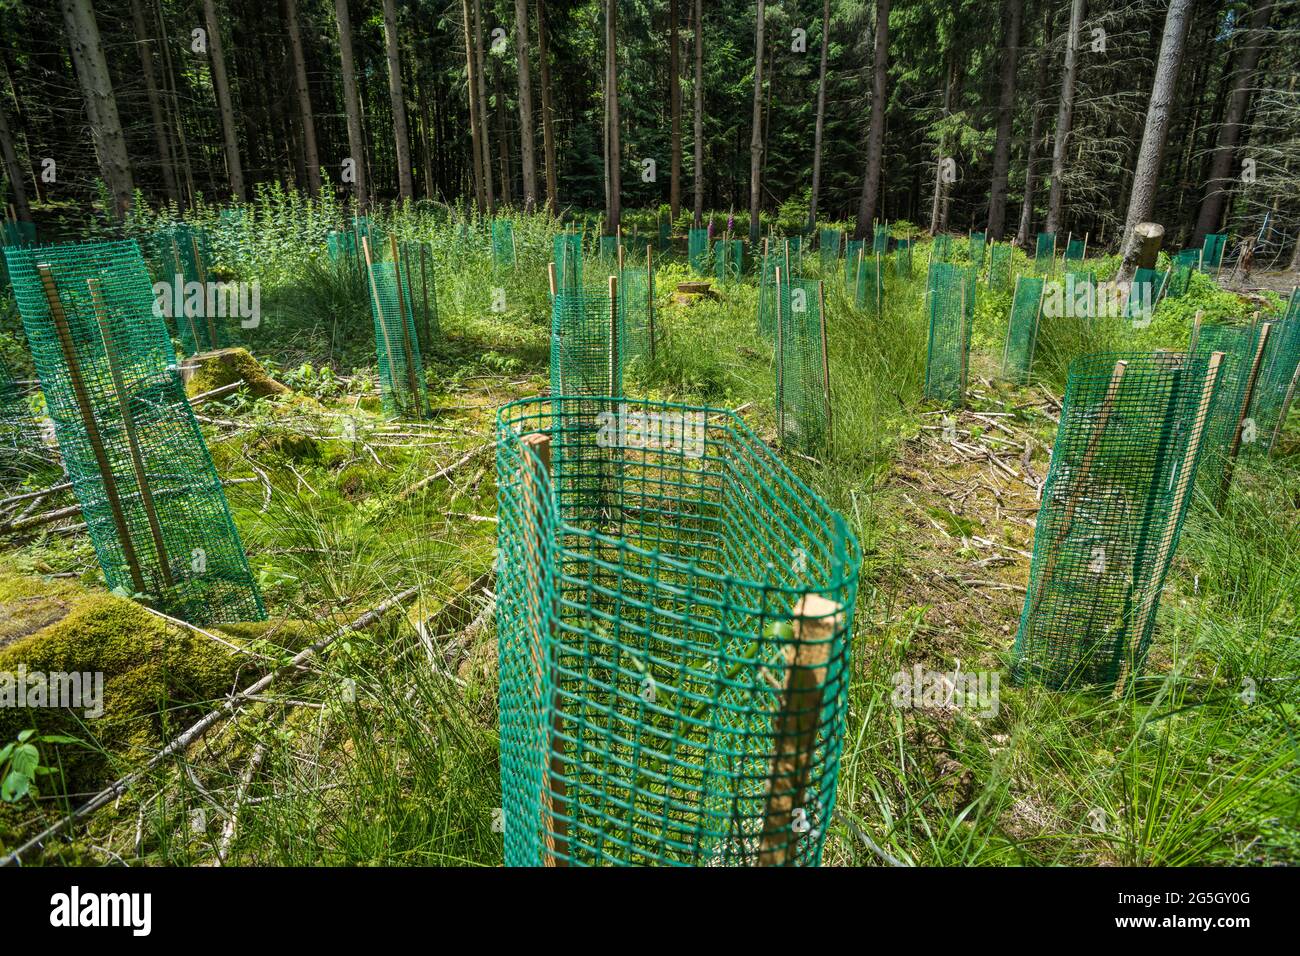 Plastik im Wald, wie es zum Schutz und zur Unterstützung von neu gepflanzten Bäumen verwendet wird, kann zum Problem werden. Es kann sich zersetzen und in den Boden eindringen. Verschmutzung Stockfoto